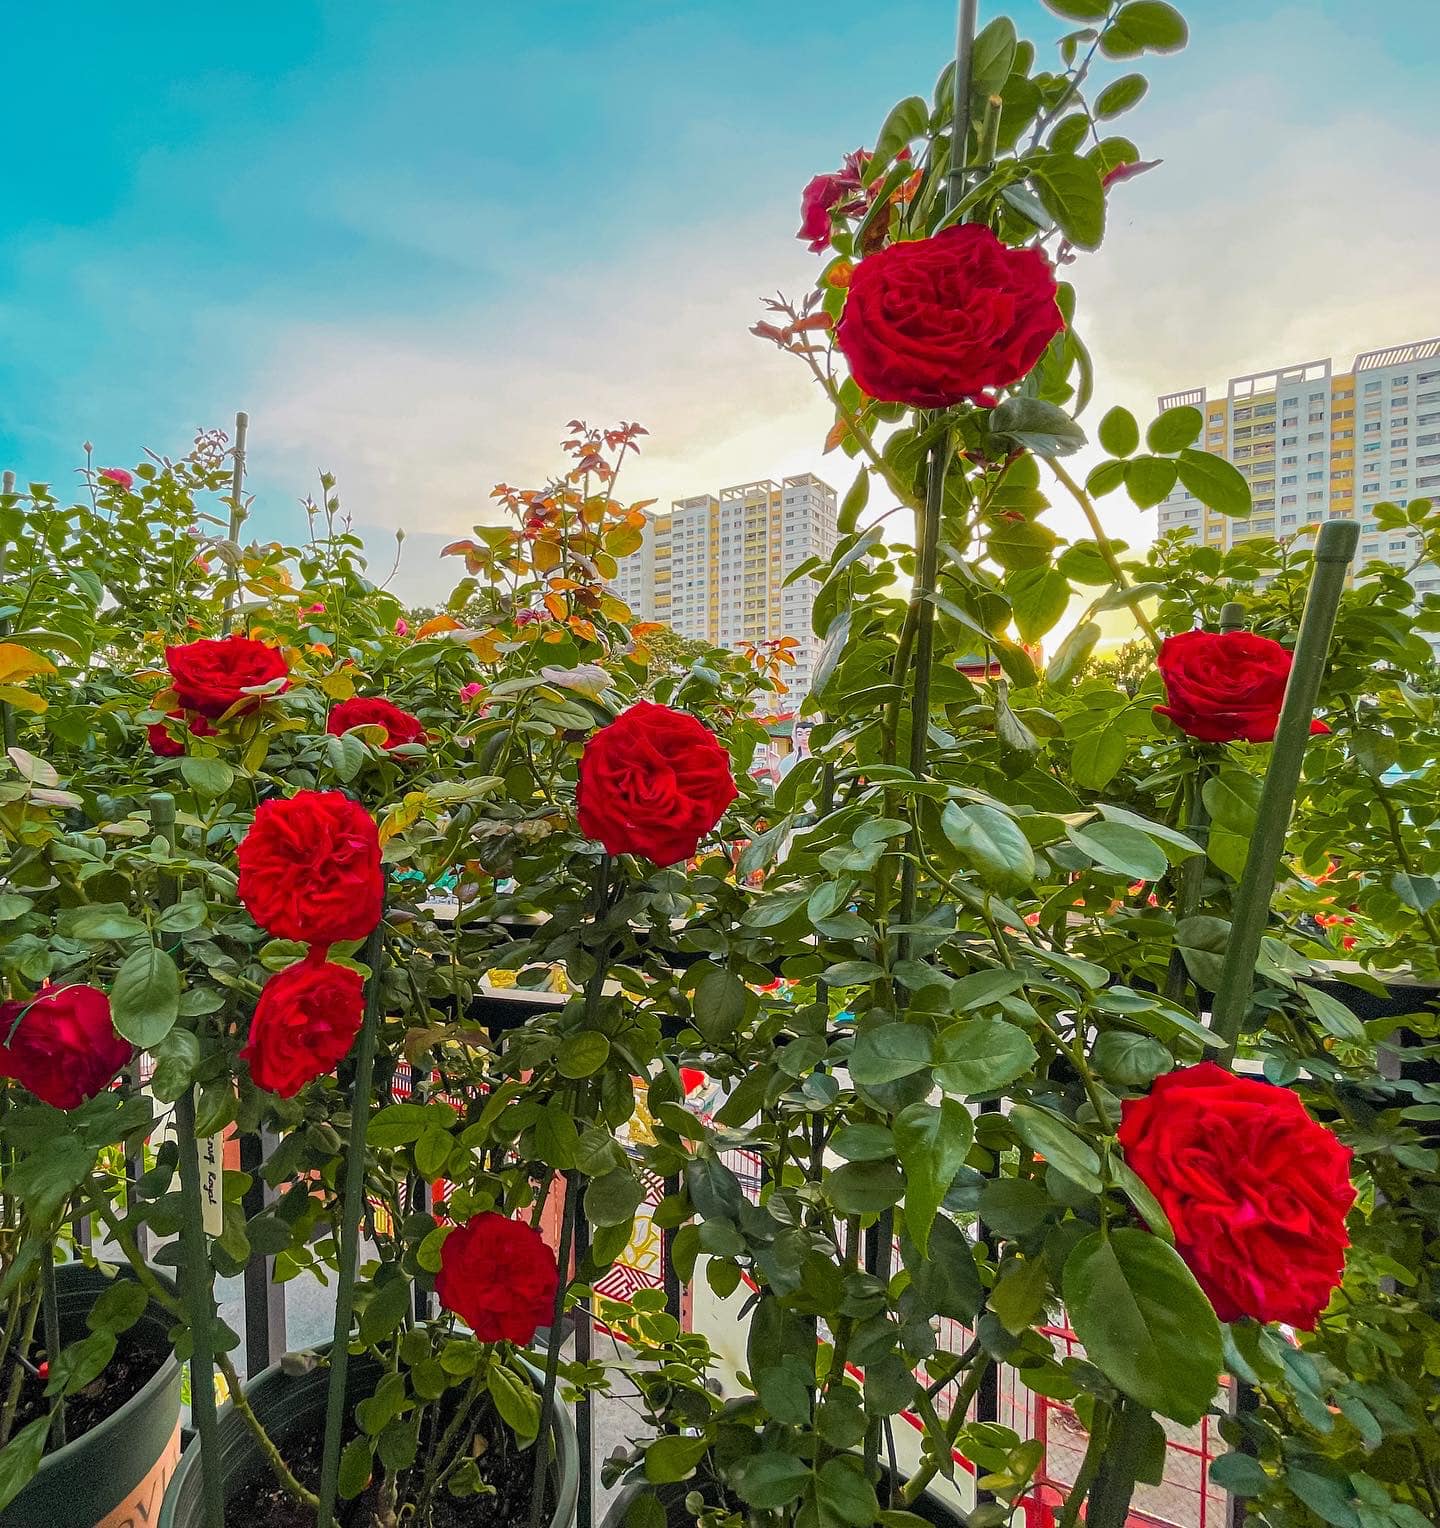 Vườn hoa hồng ngoại đẹp ngây ngất trên sân thượng giữa Sài thành của trai đẹp Sài Gòn - Ảnh 14.